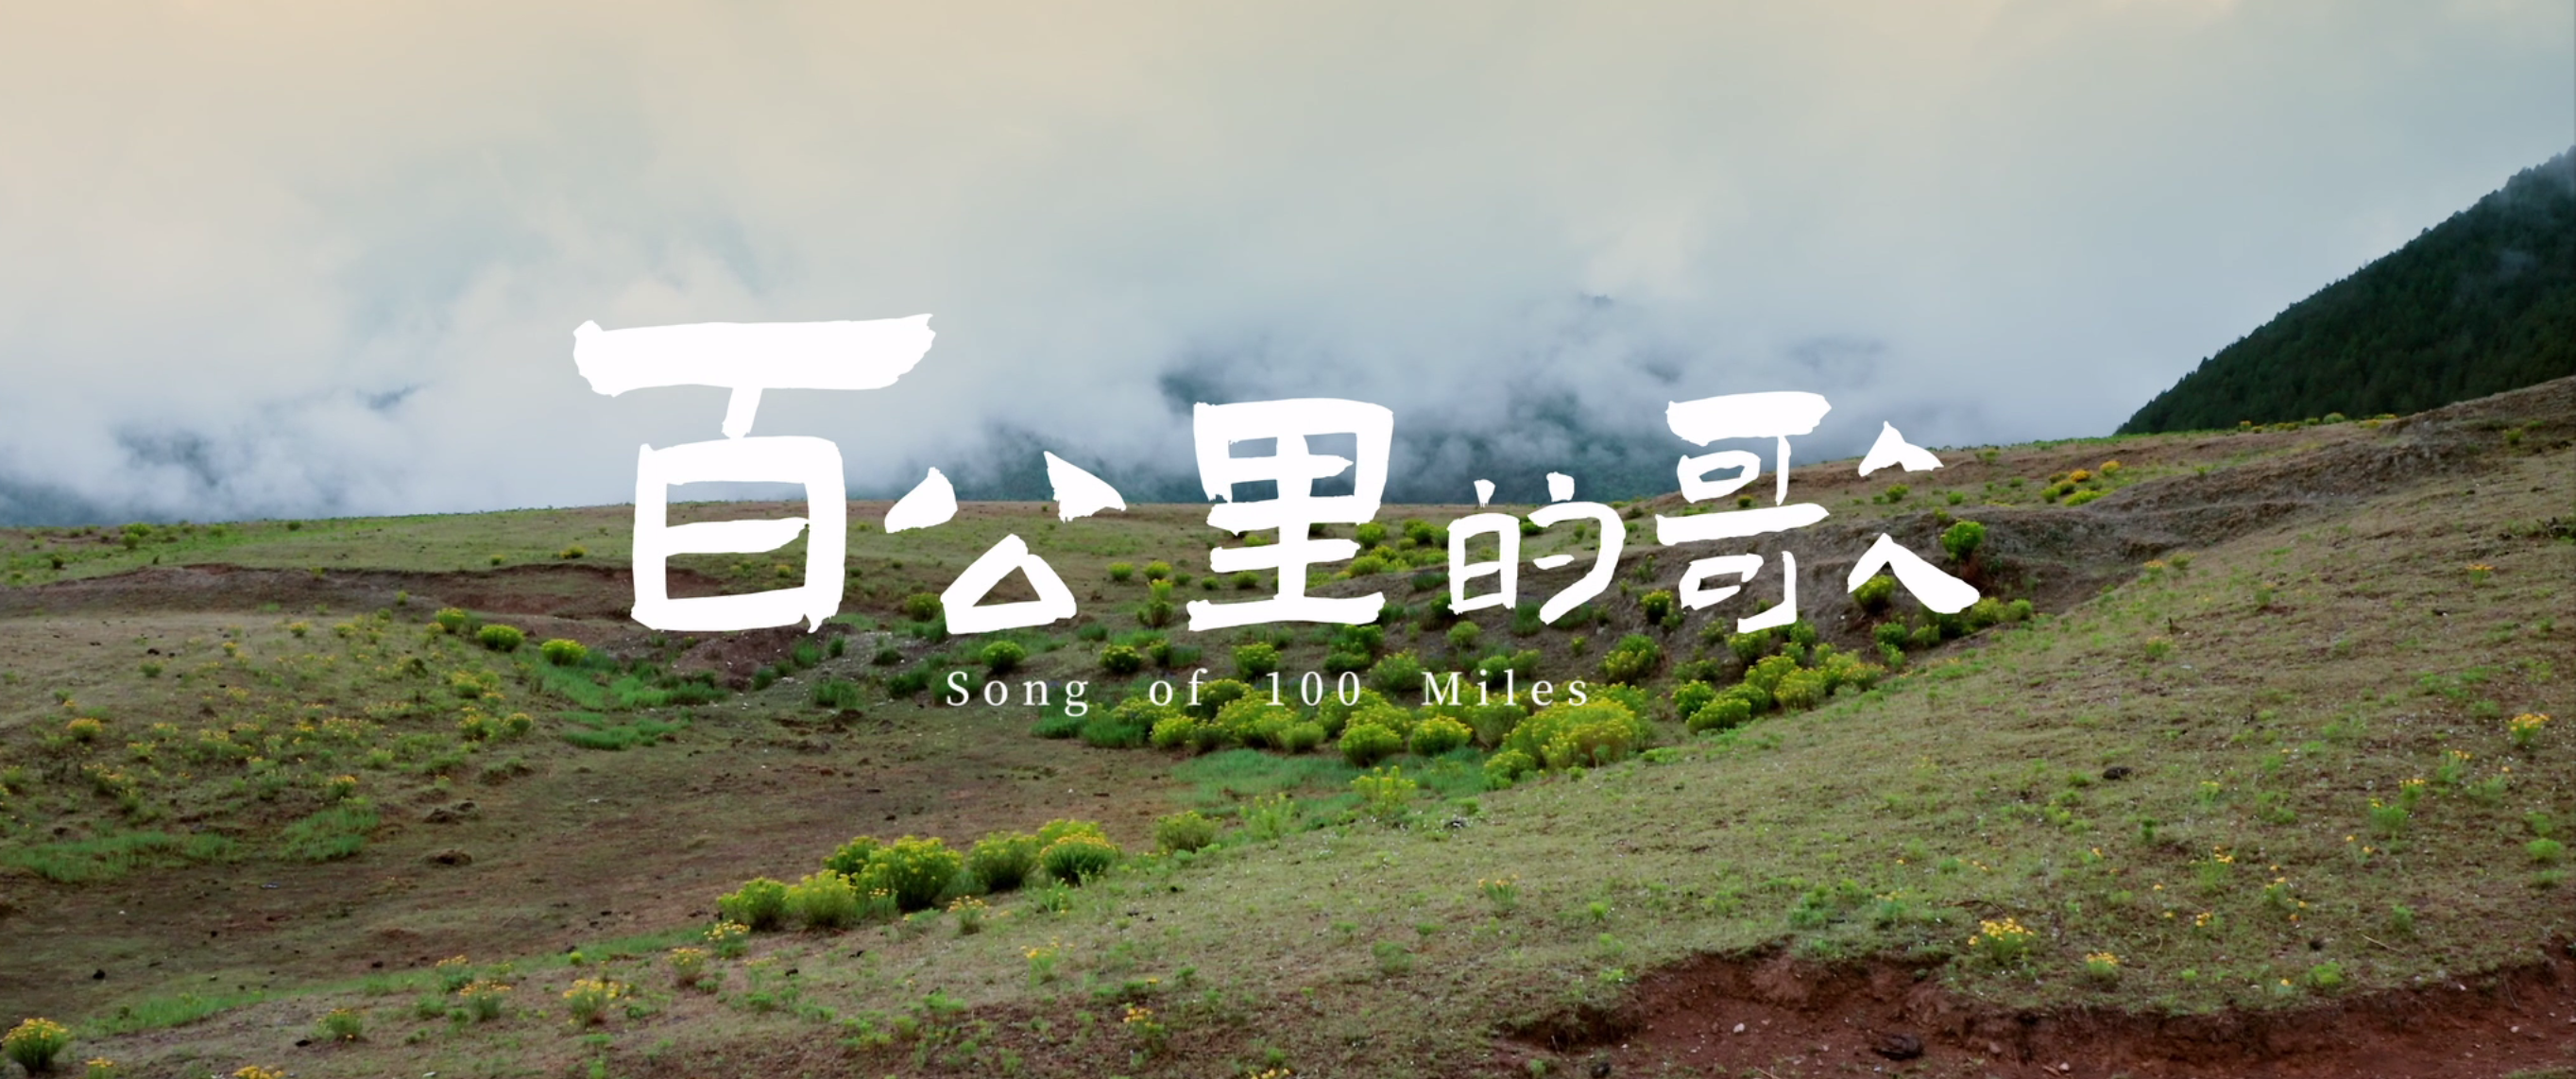 中国旅游集团-《百公里的歌》